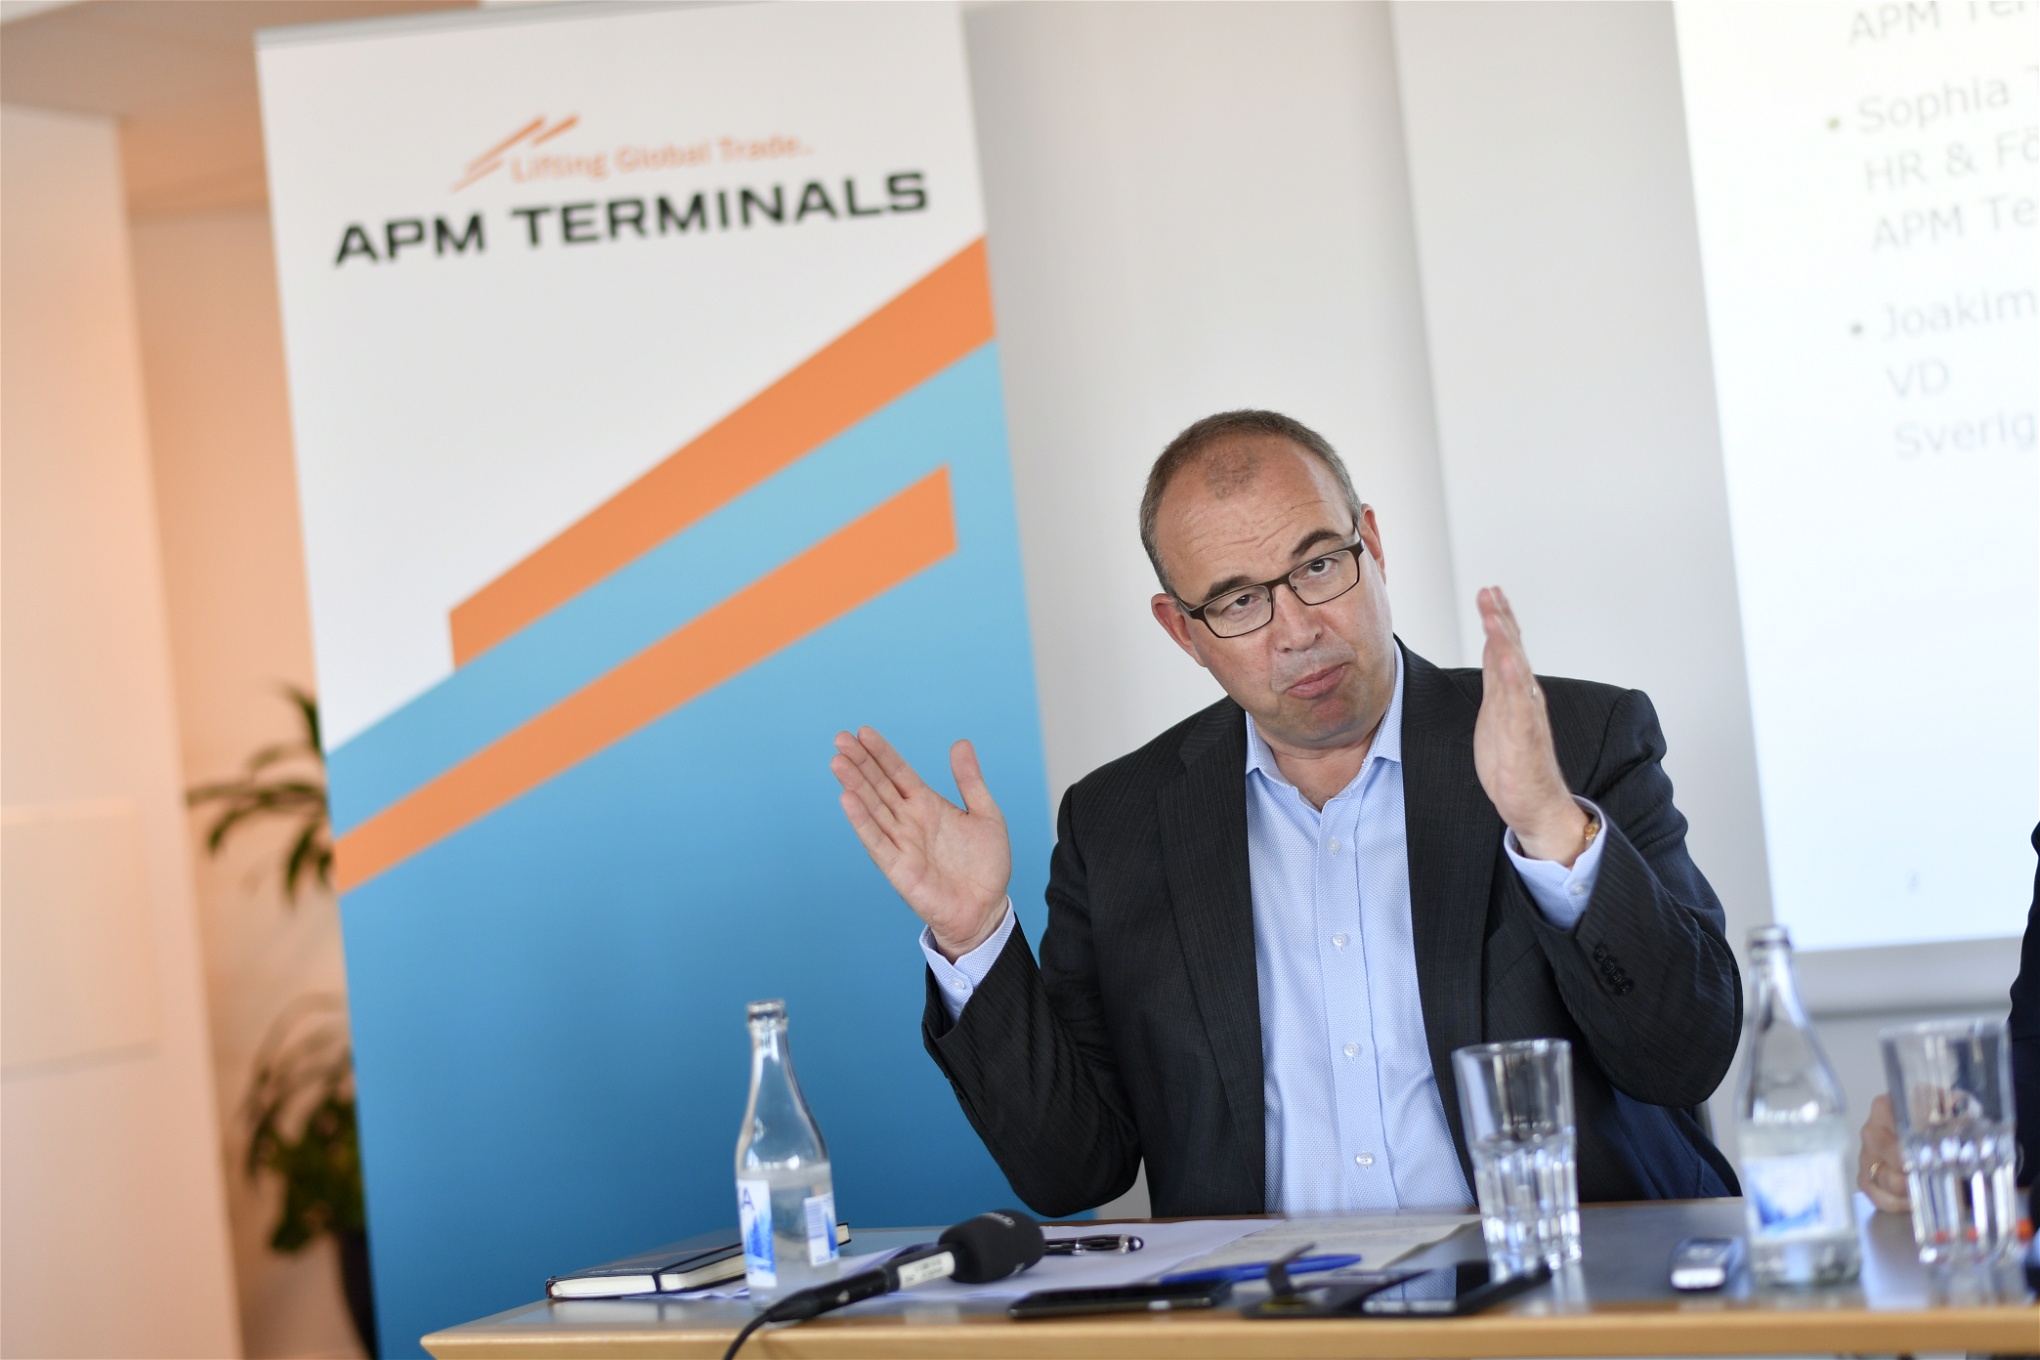 ”Det här är ett tufft men nödvändigt beslut”, sade vd:n Henrik Kristensen när han redovisade APM Terminals beslut att varsla 160 anställda vid containerhamnen i Göteborg. Varslet motiverades med minskade volymer på grund av konflikten i hamnen.